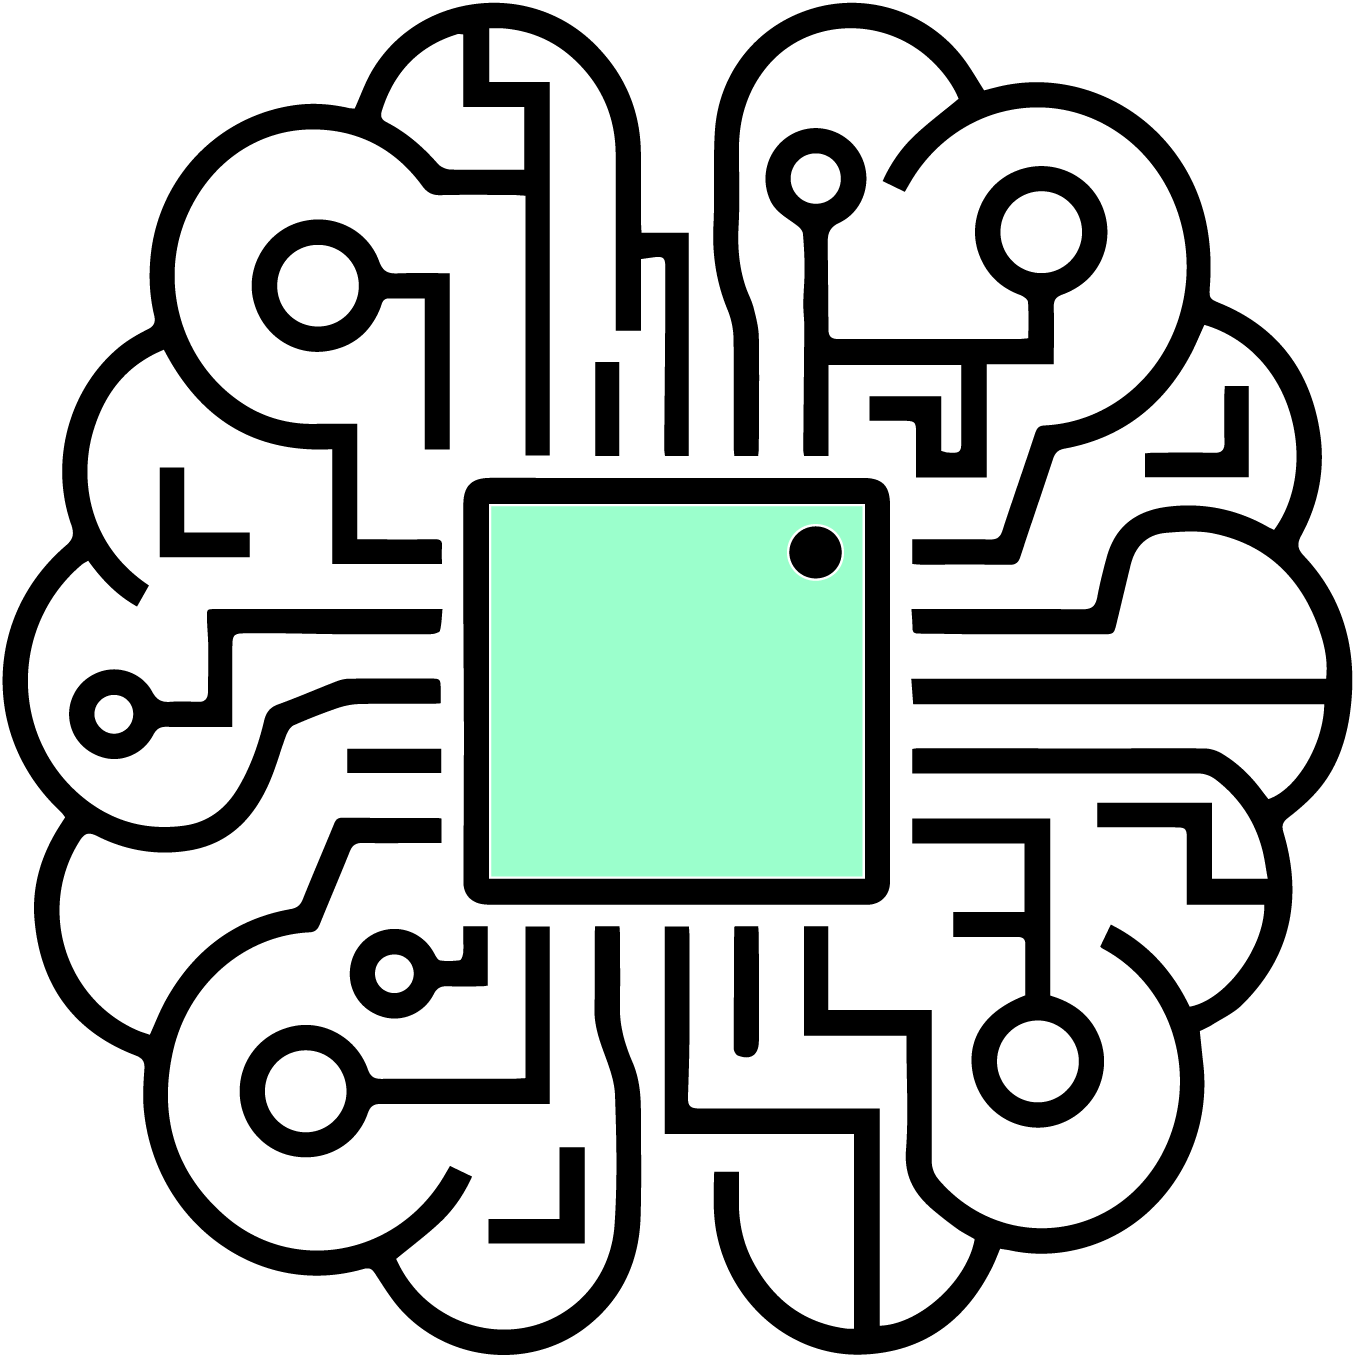 Eine grafische Darstellung eines vernetzten Datenwerks in Form eines menschlichen Gehirns mit einem Mikrochip im Inneren.